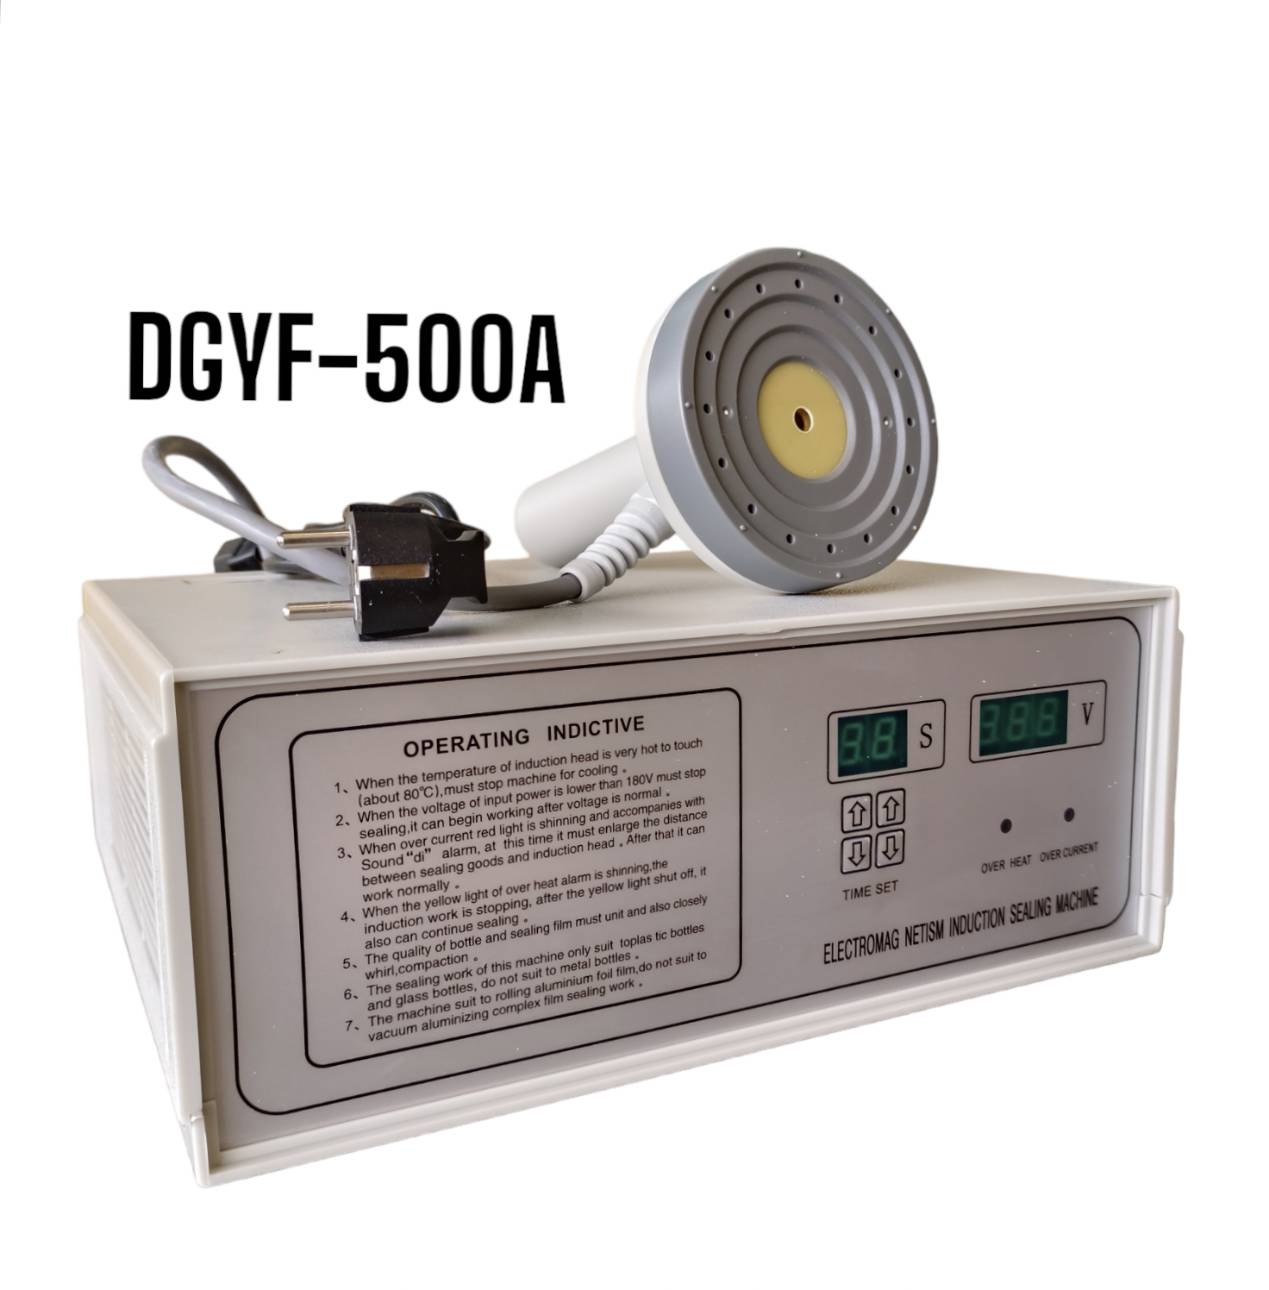 DGYF-500A/C